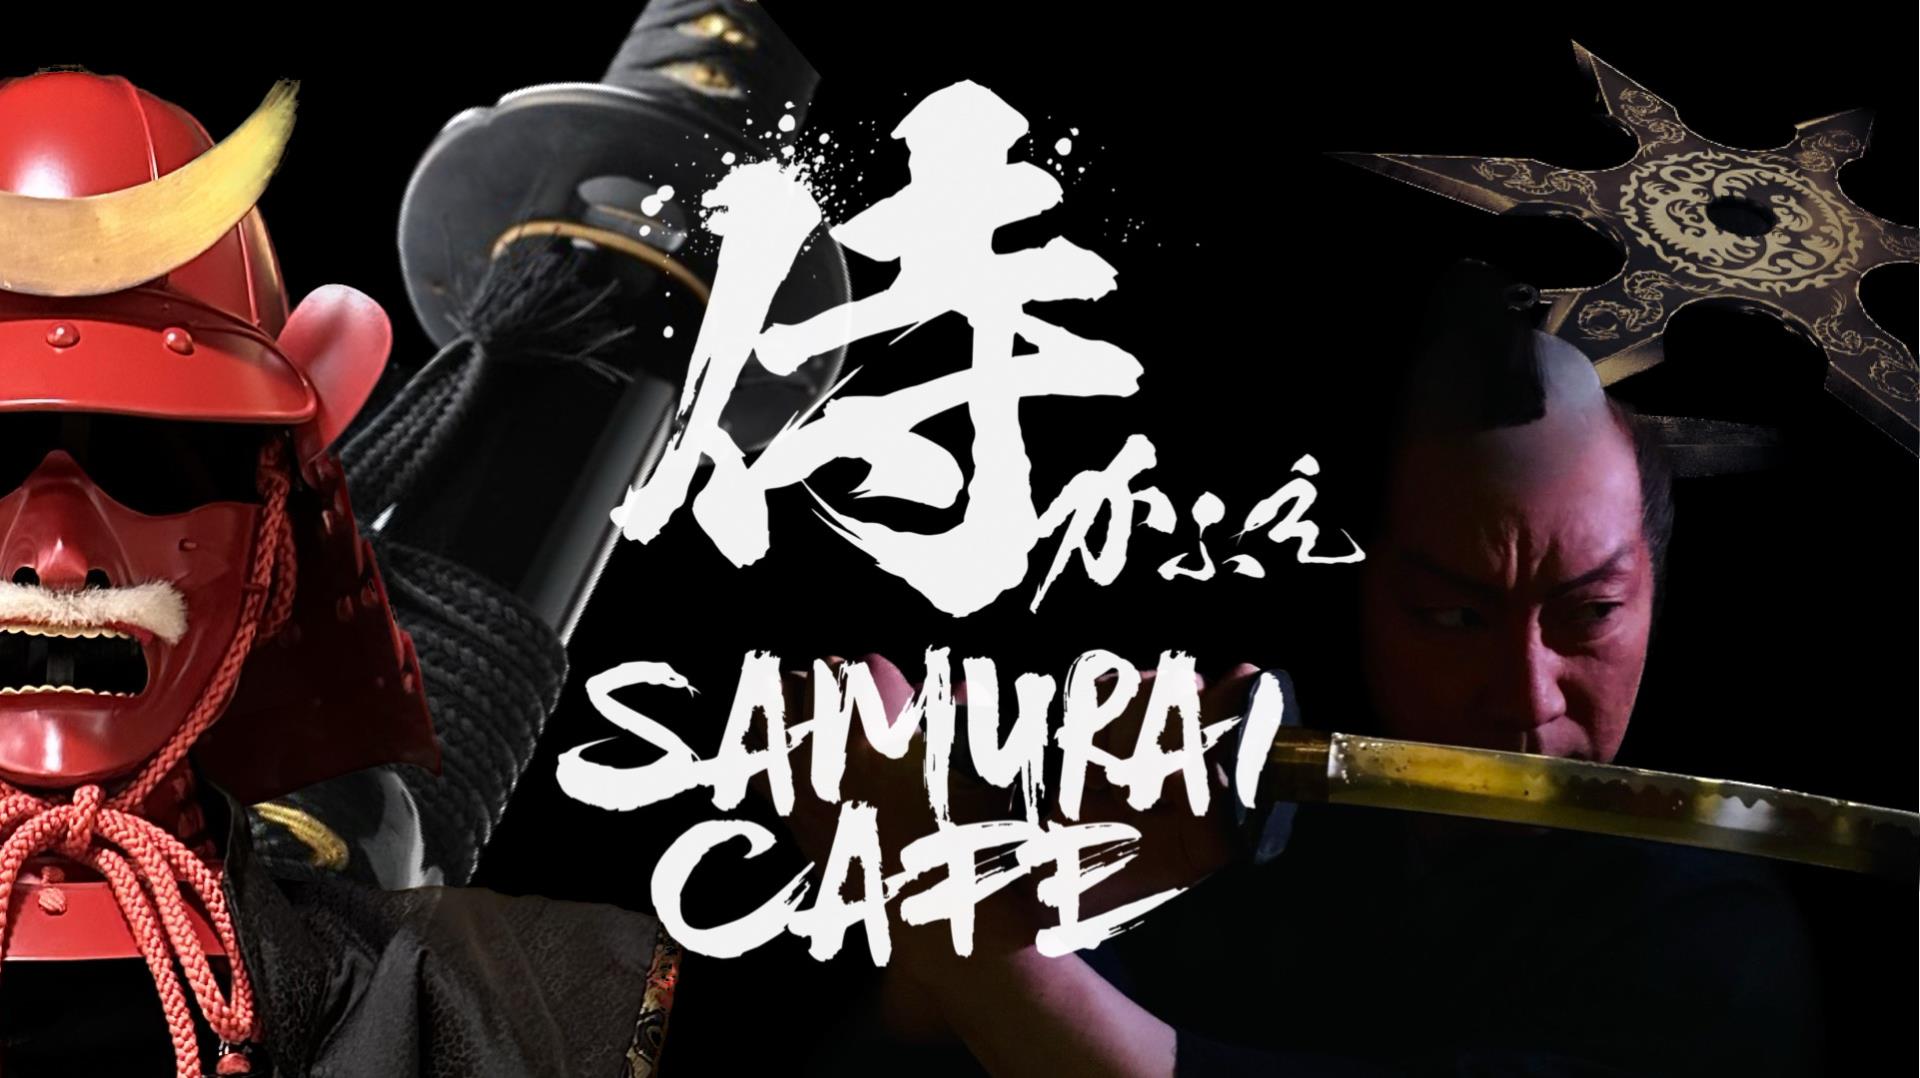 Samurai咖啡厅